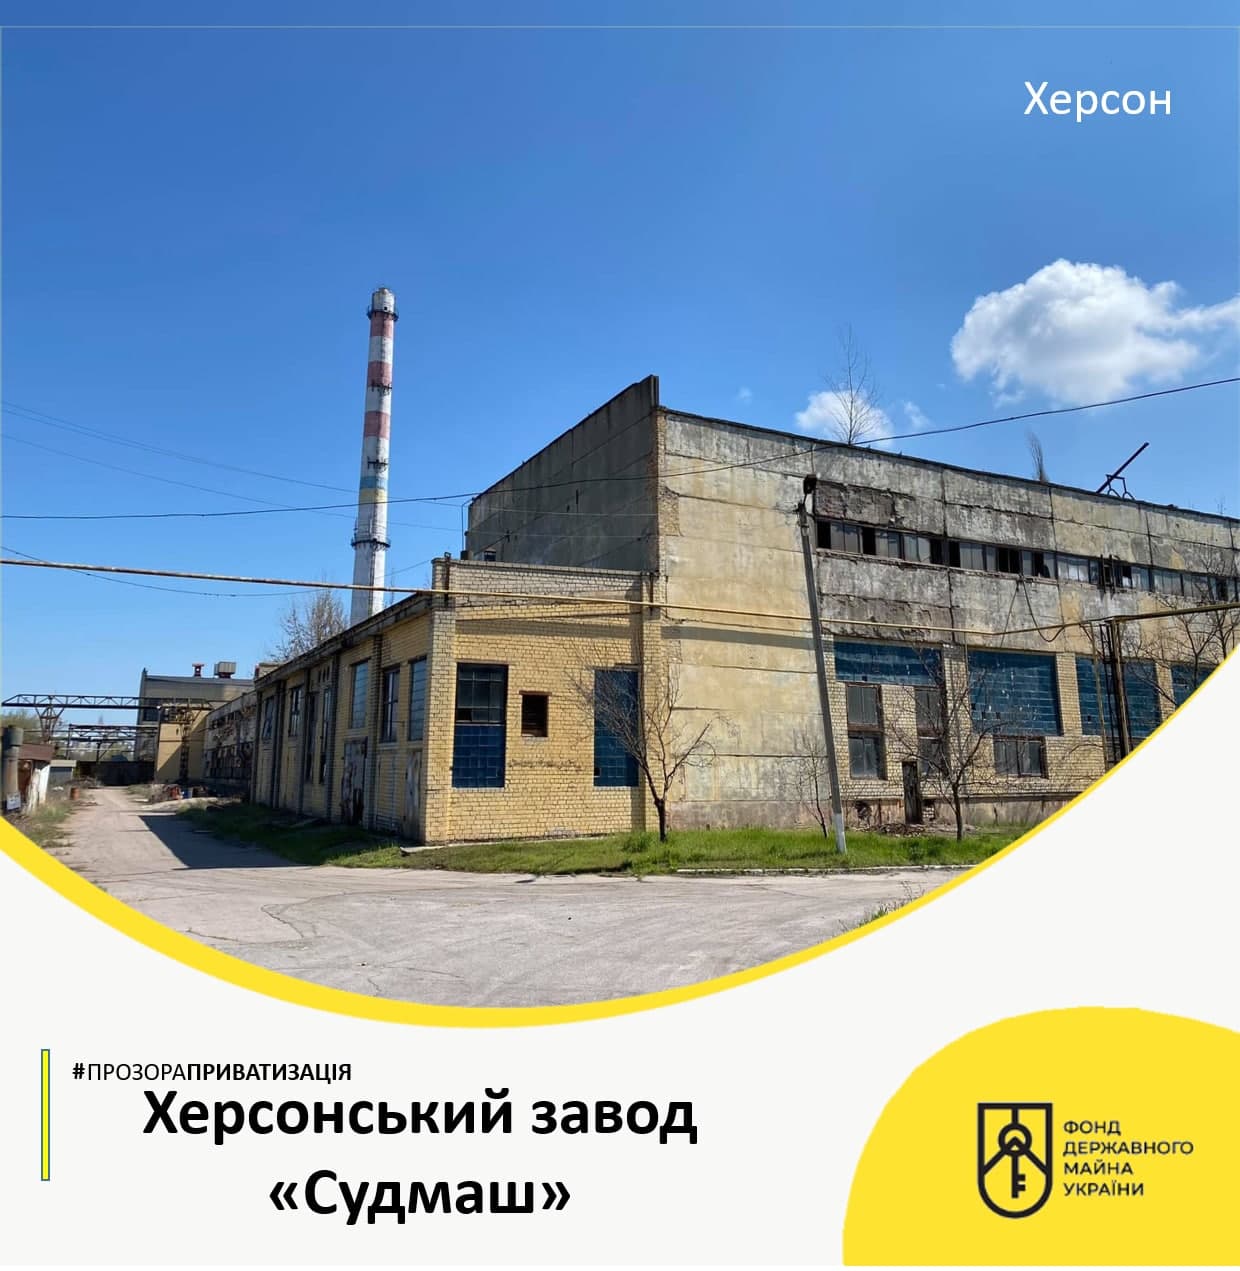 Оголошено аукціон із приватизації Херсонського заводу «Судмаш»!